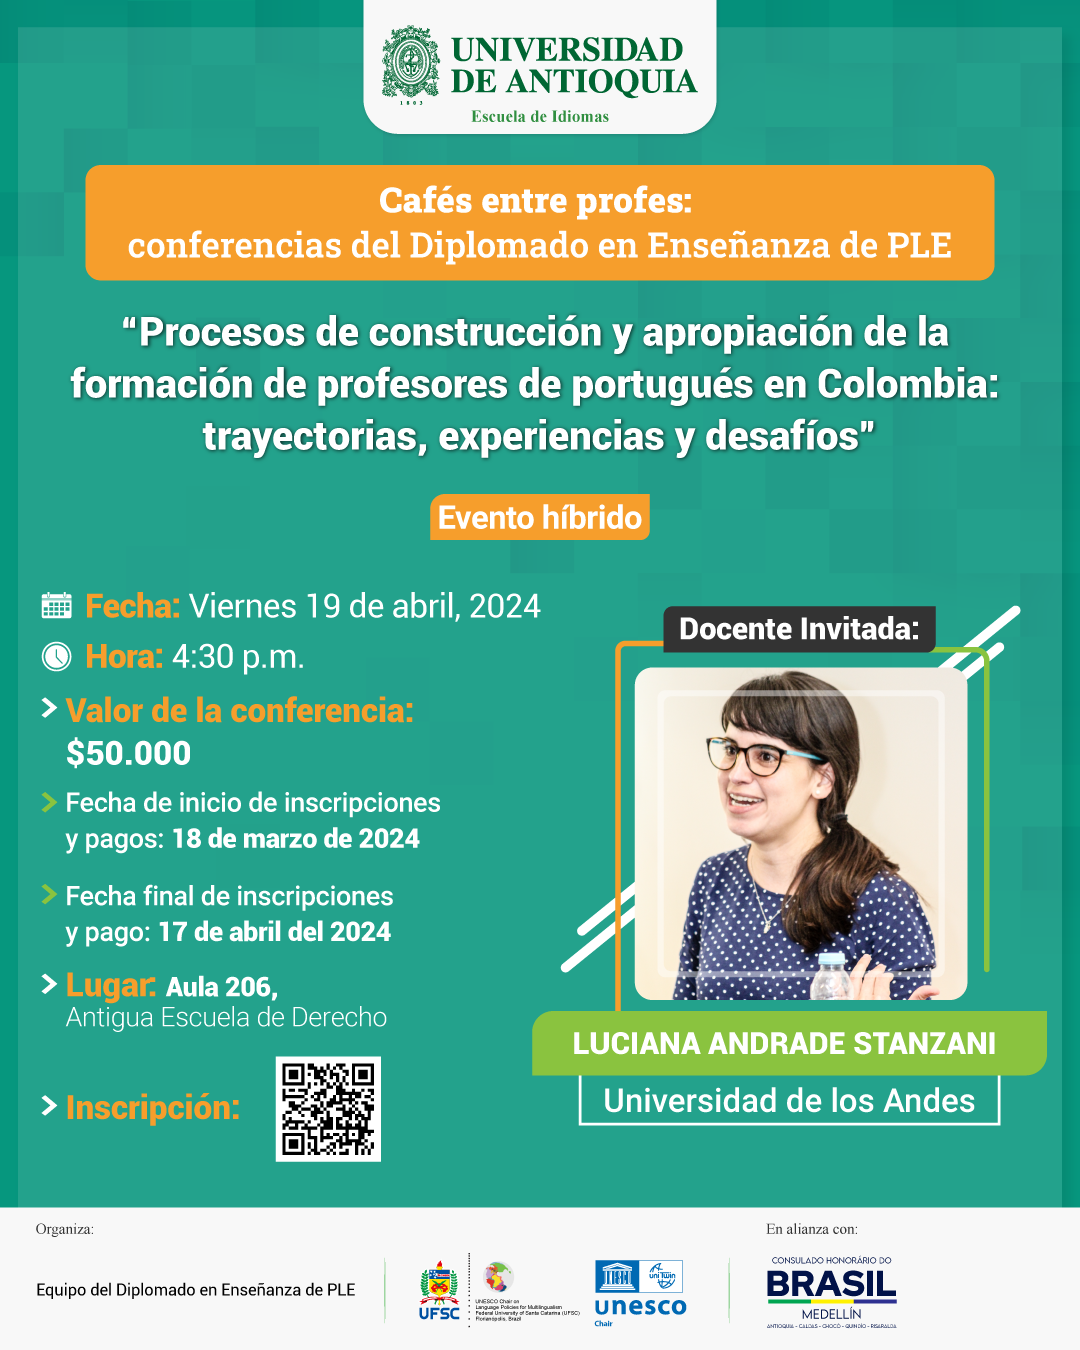 Conferencia: “Procesos de construcción y apropiación de la formación de profesores de portugués en Colombia: trayectorias, experiencias y desafíos”